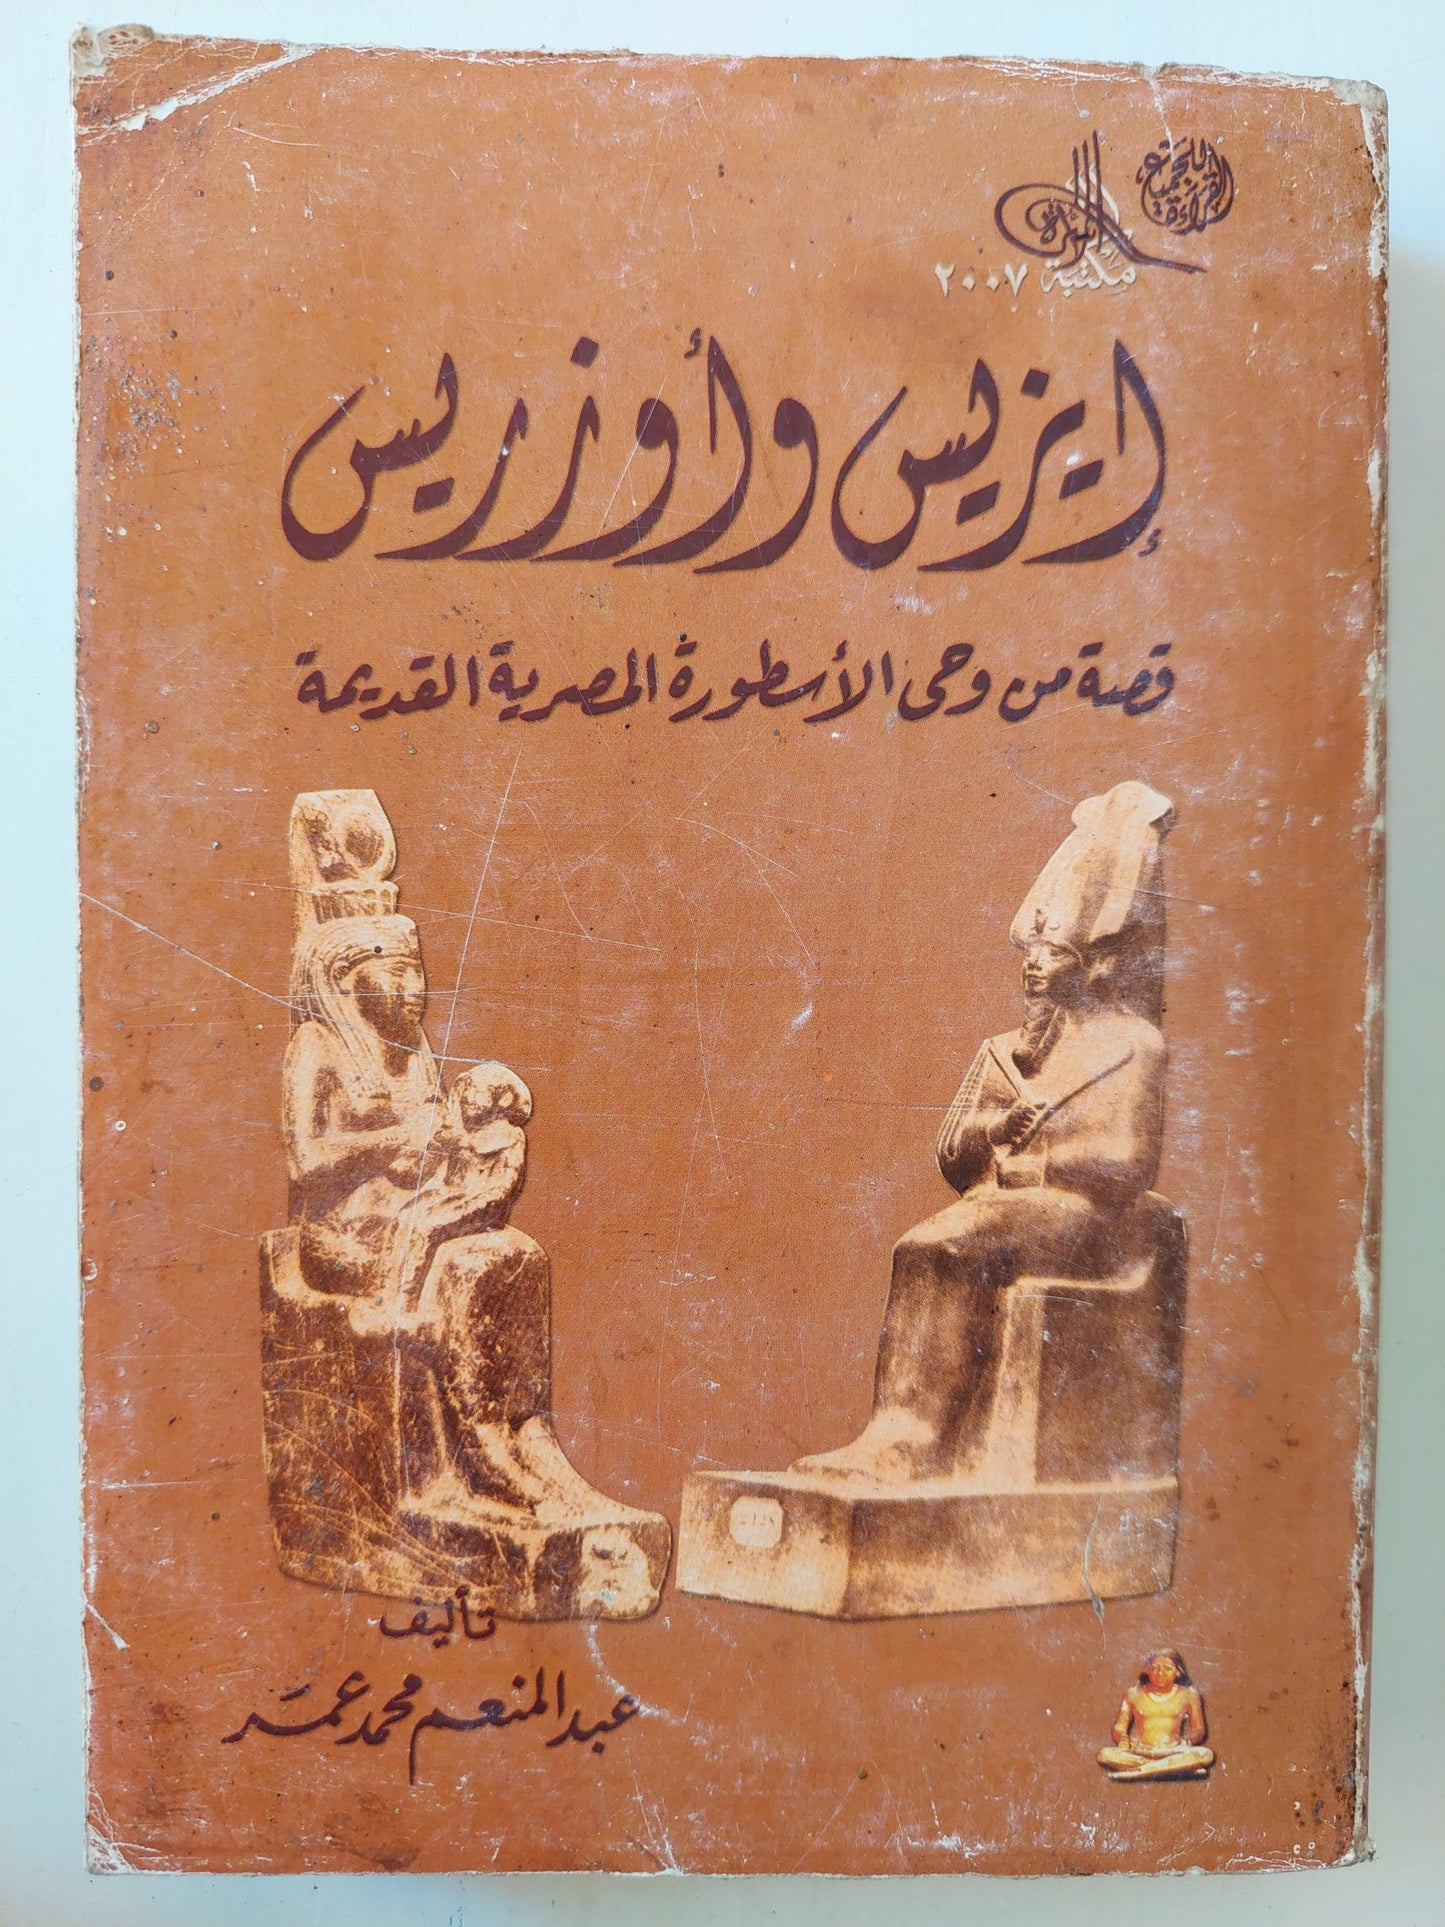 إيزيس وأوزريس : قصة من وحي الأسطورة القديمة - متجر كتب مصر